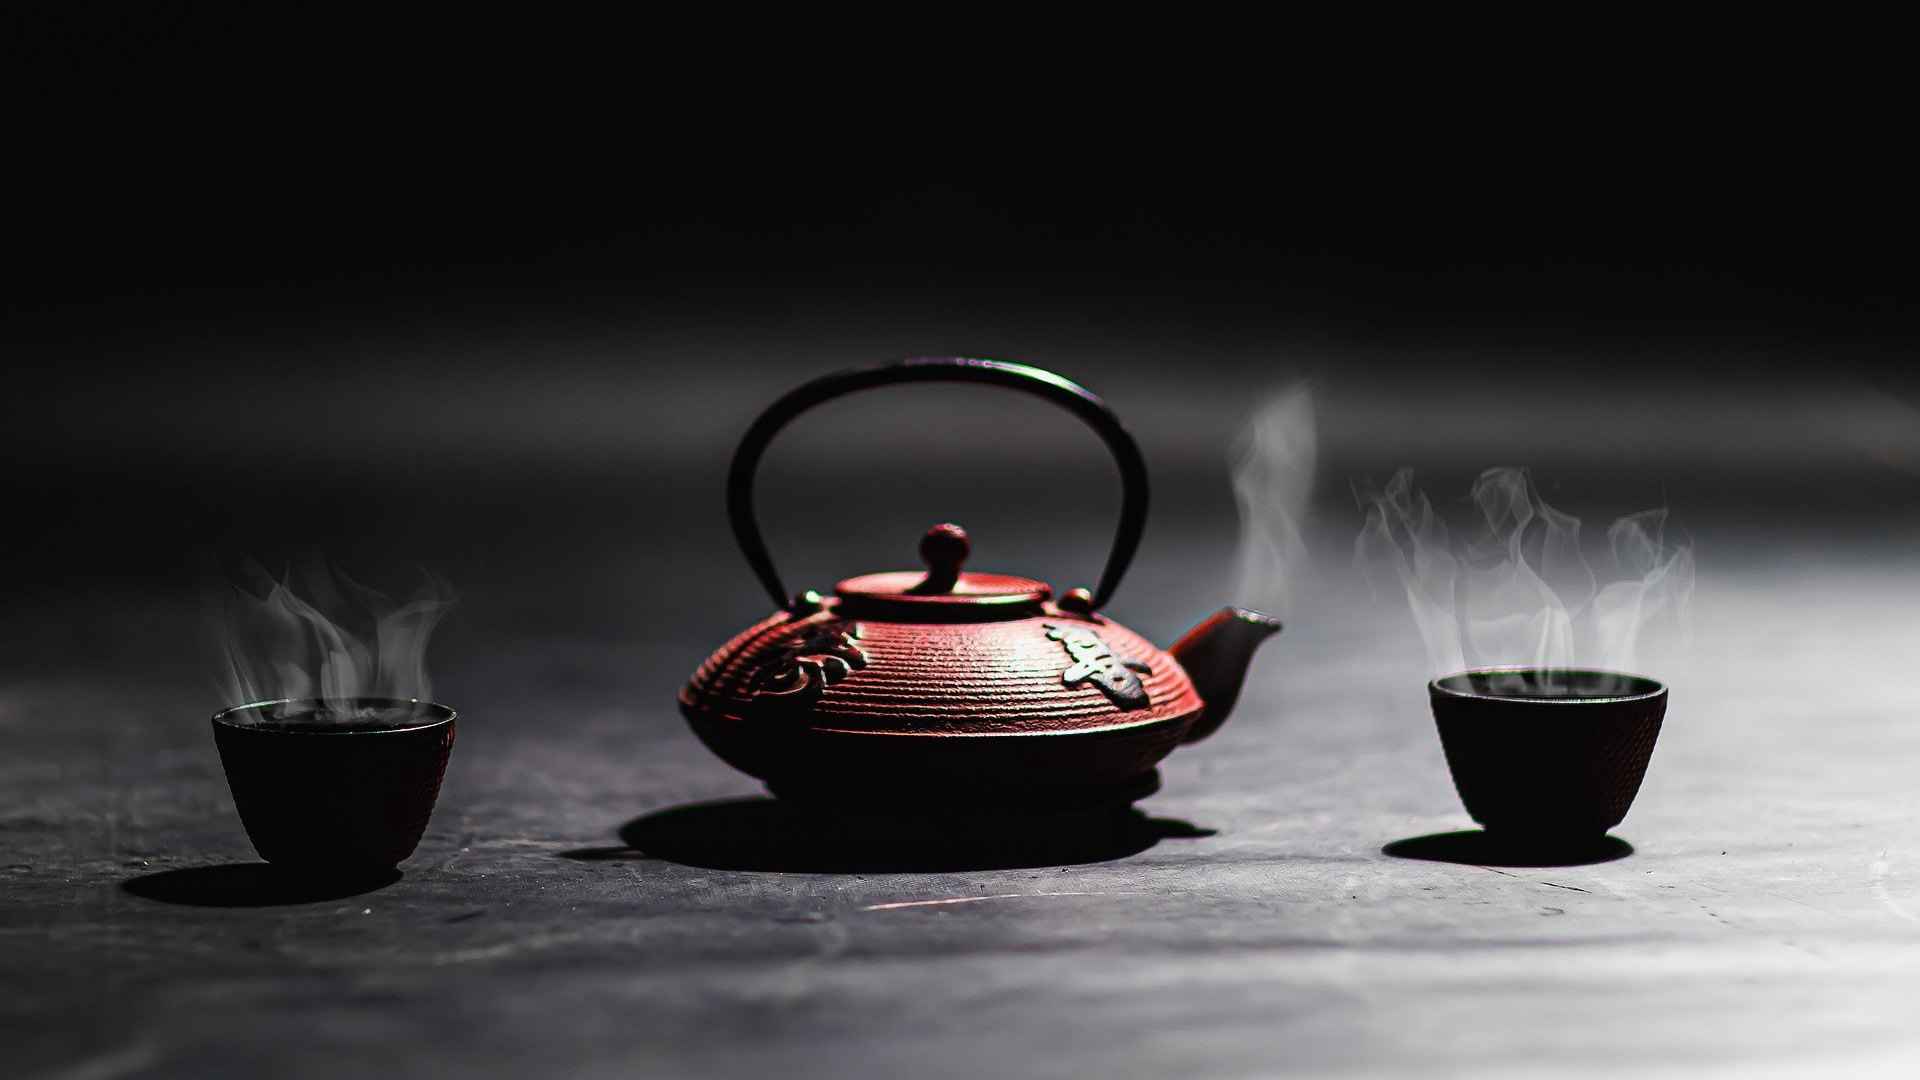 茶壶，茶杯 热茶 静物摄影桌面壁纸图片-